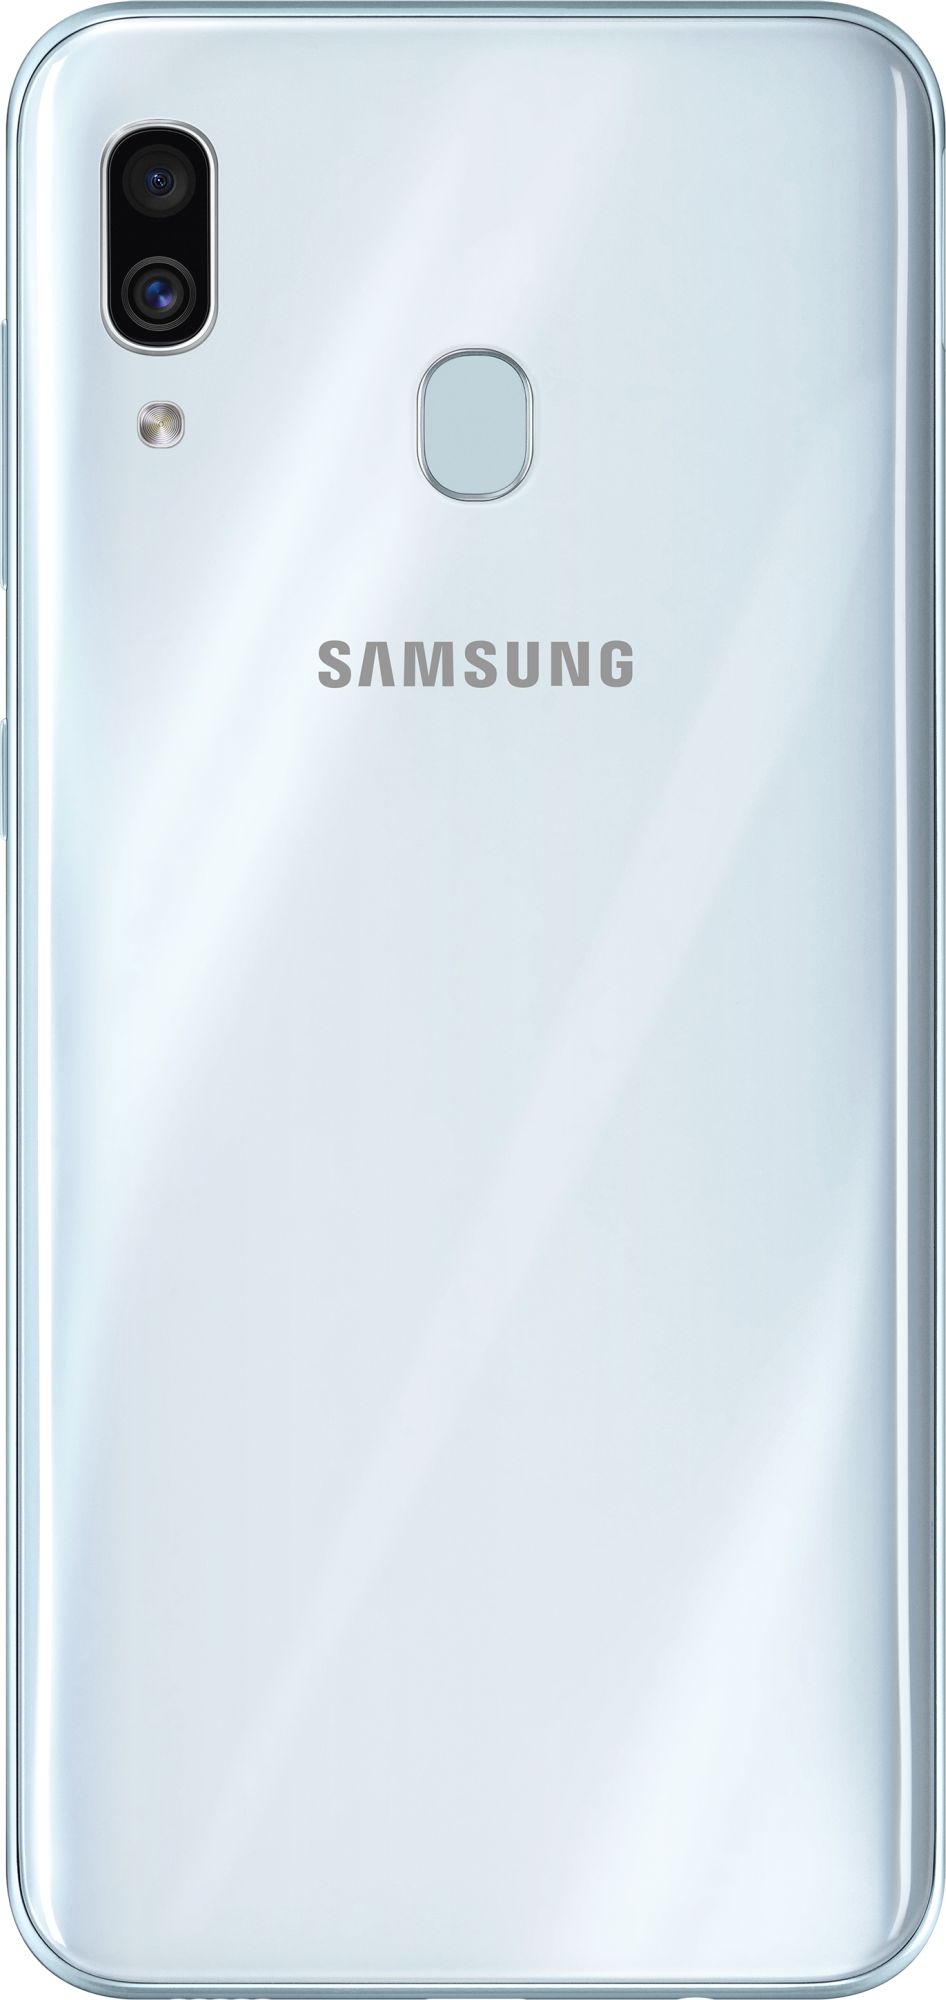 Samsung A30 3 32gb